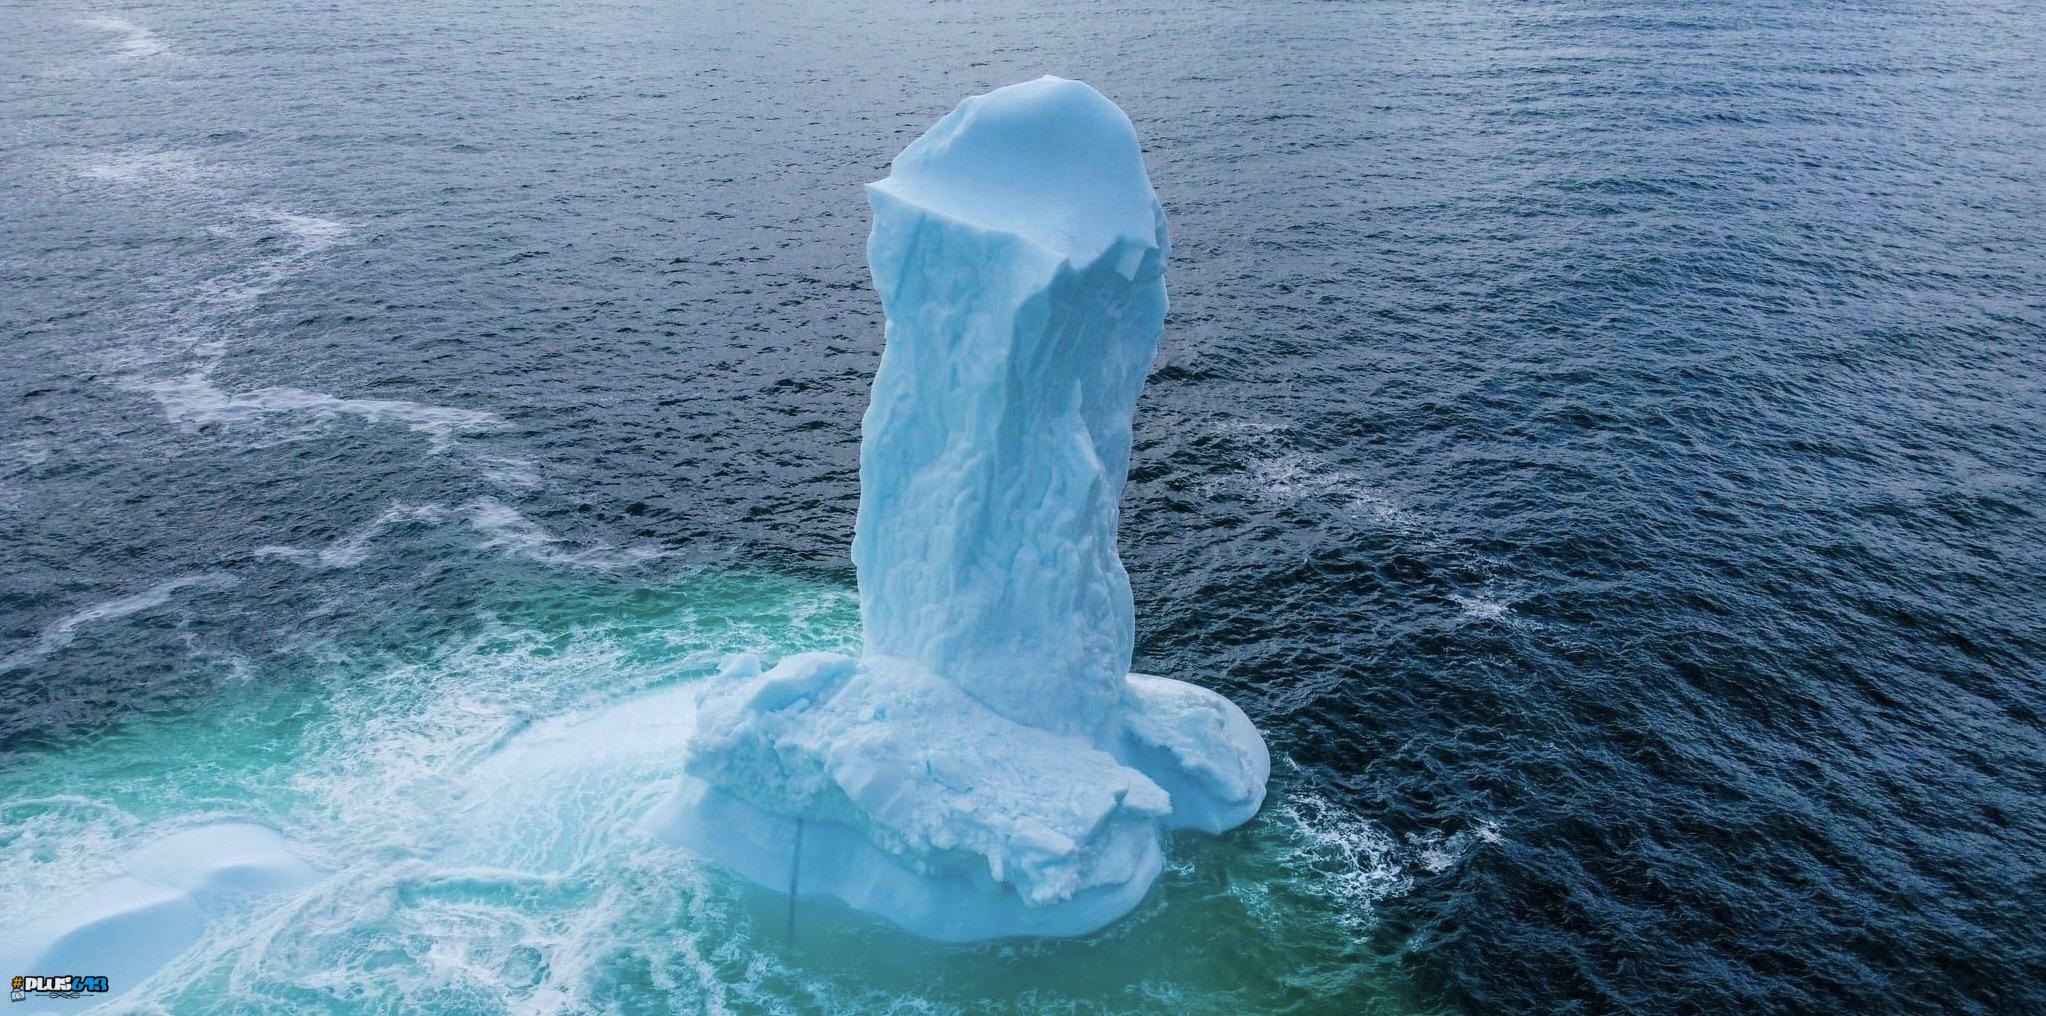 Iceberg, dead ahead!